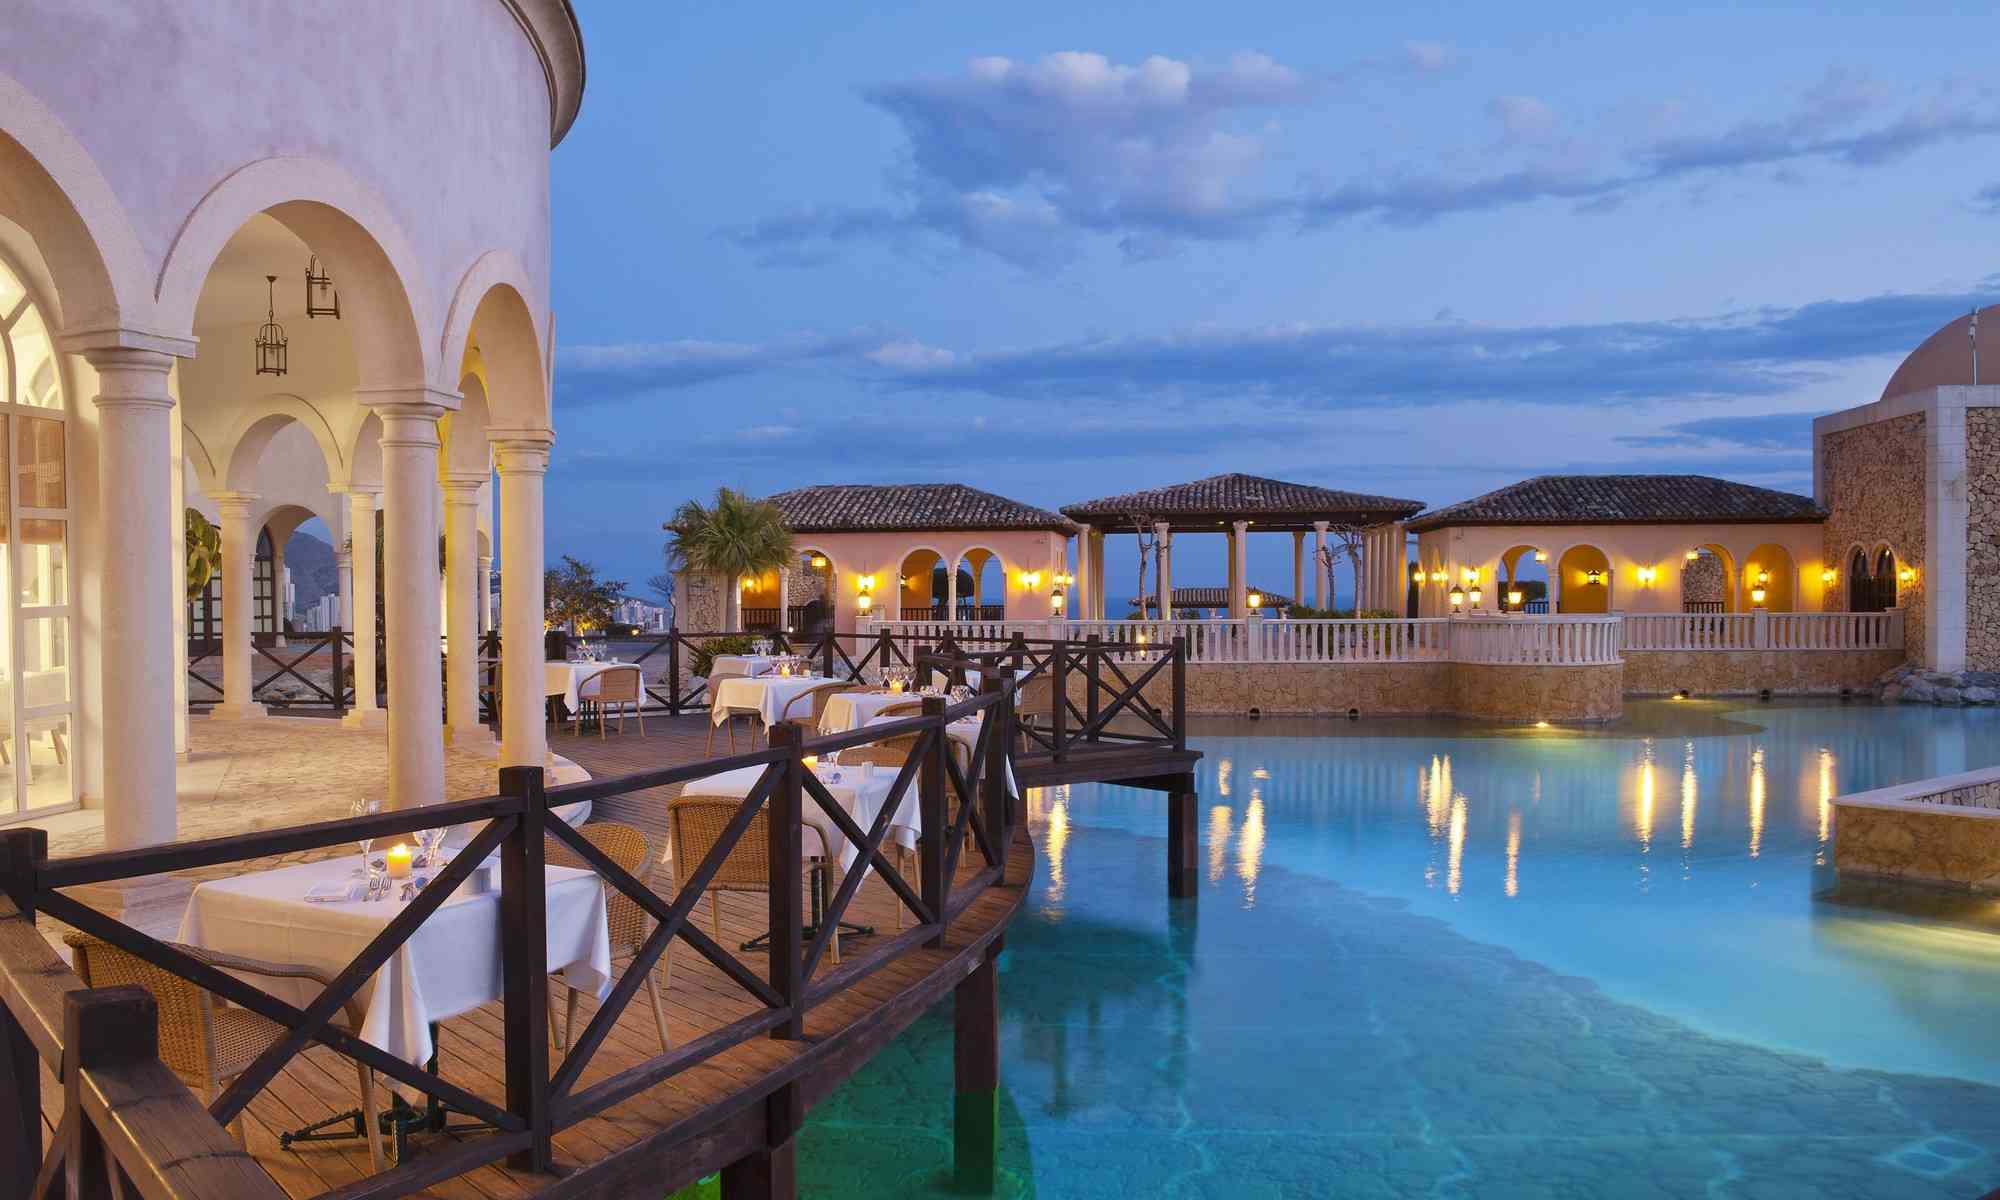 Un hotel de lujo para disfrutar de unas vacaciones en un pueblo mediterráneo 4